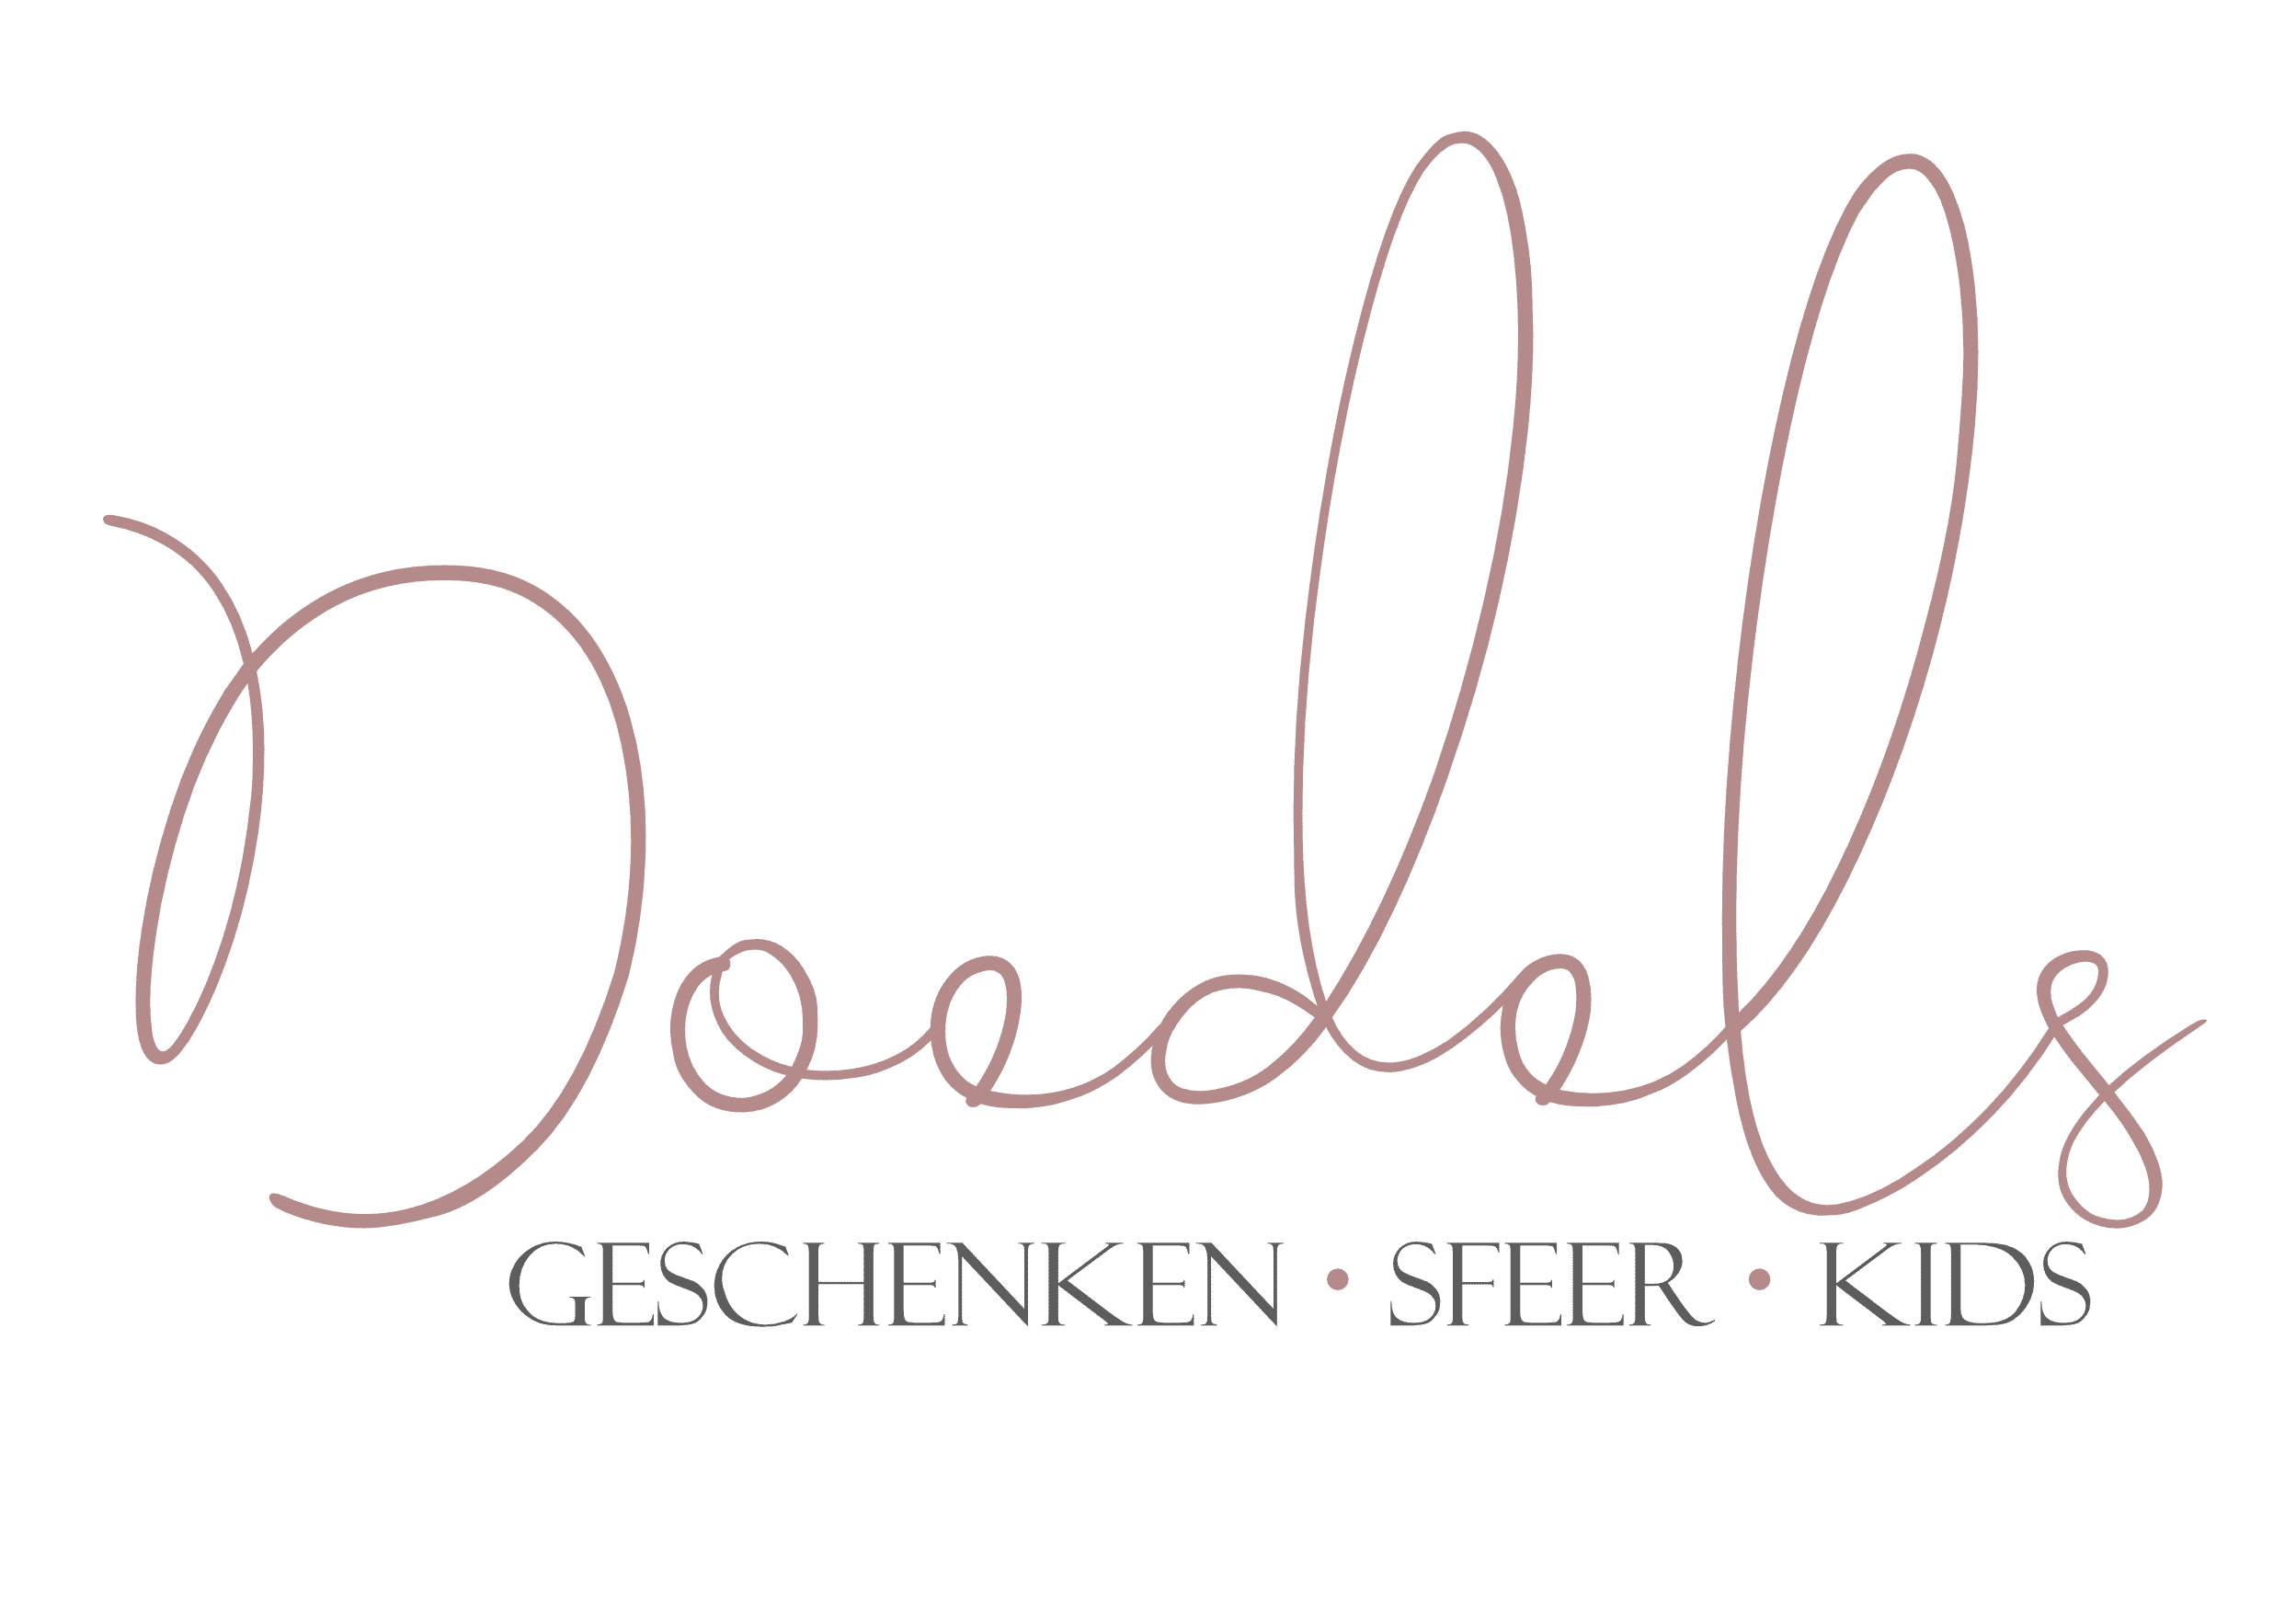 Doedels_logo_V2_transparant